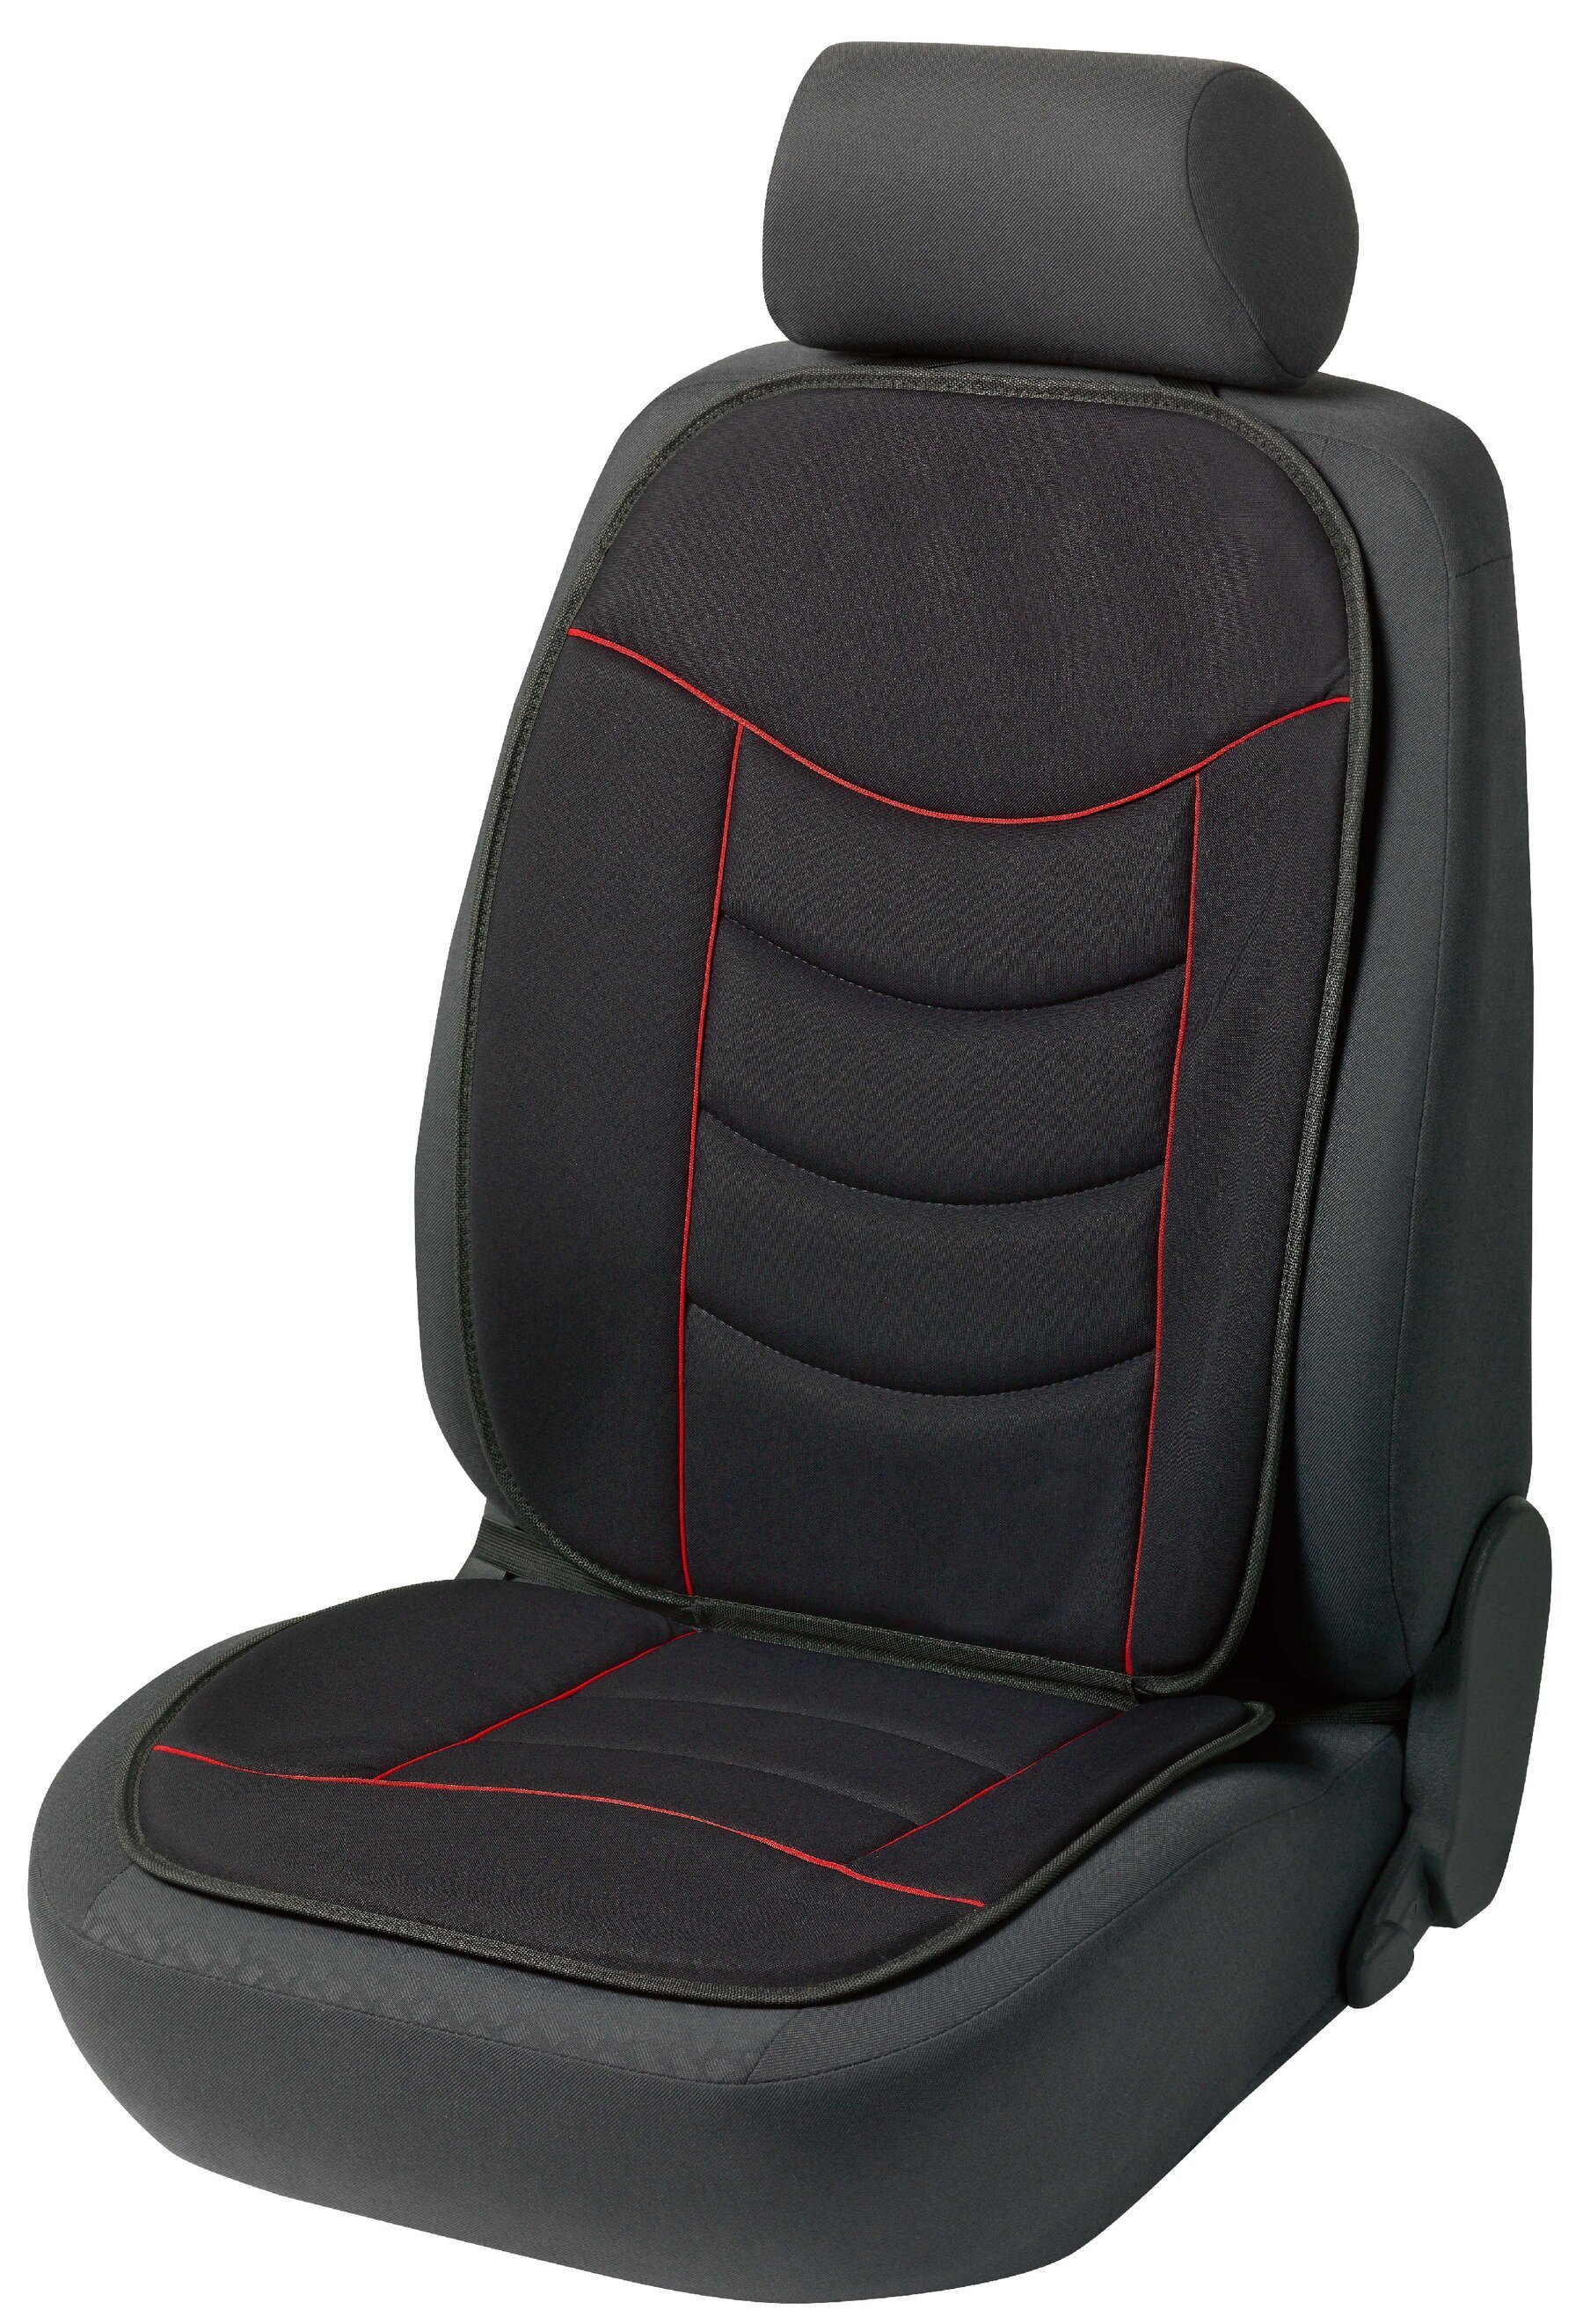 PKW Sitzauflage Elegance Plus rot schwarz